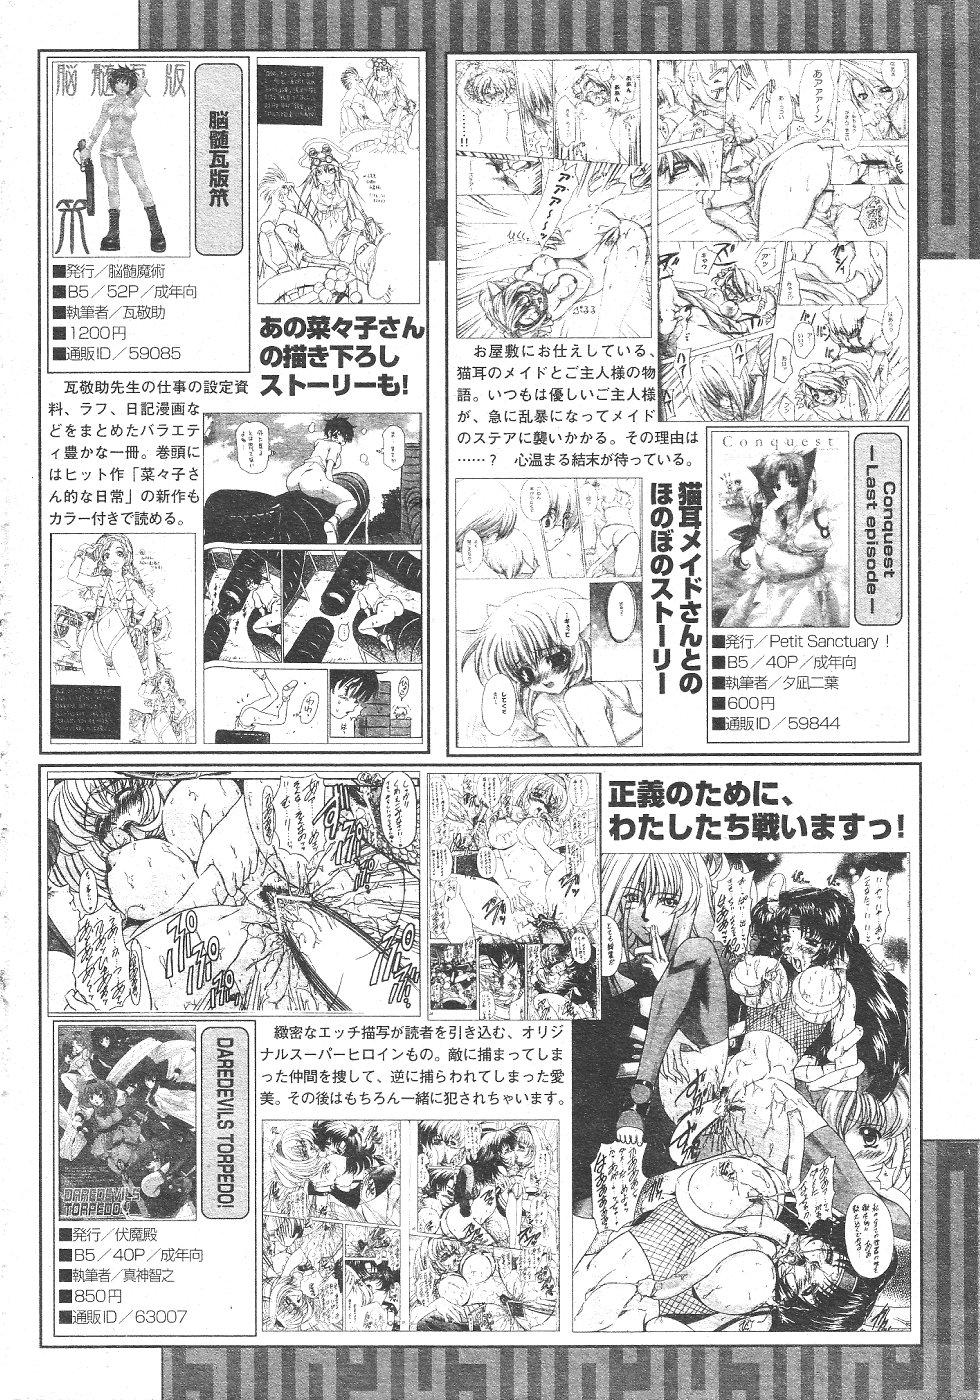 Gekkan Comic Muga 2004-06 Vol.10 409